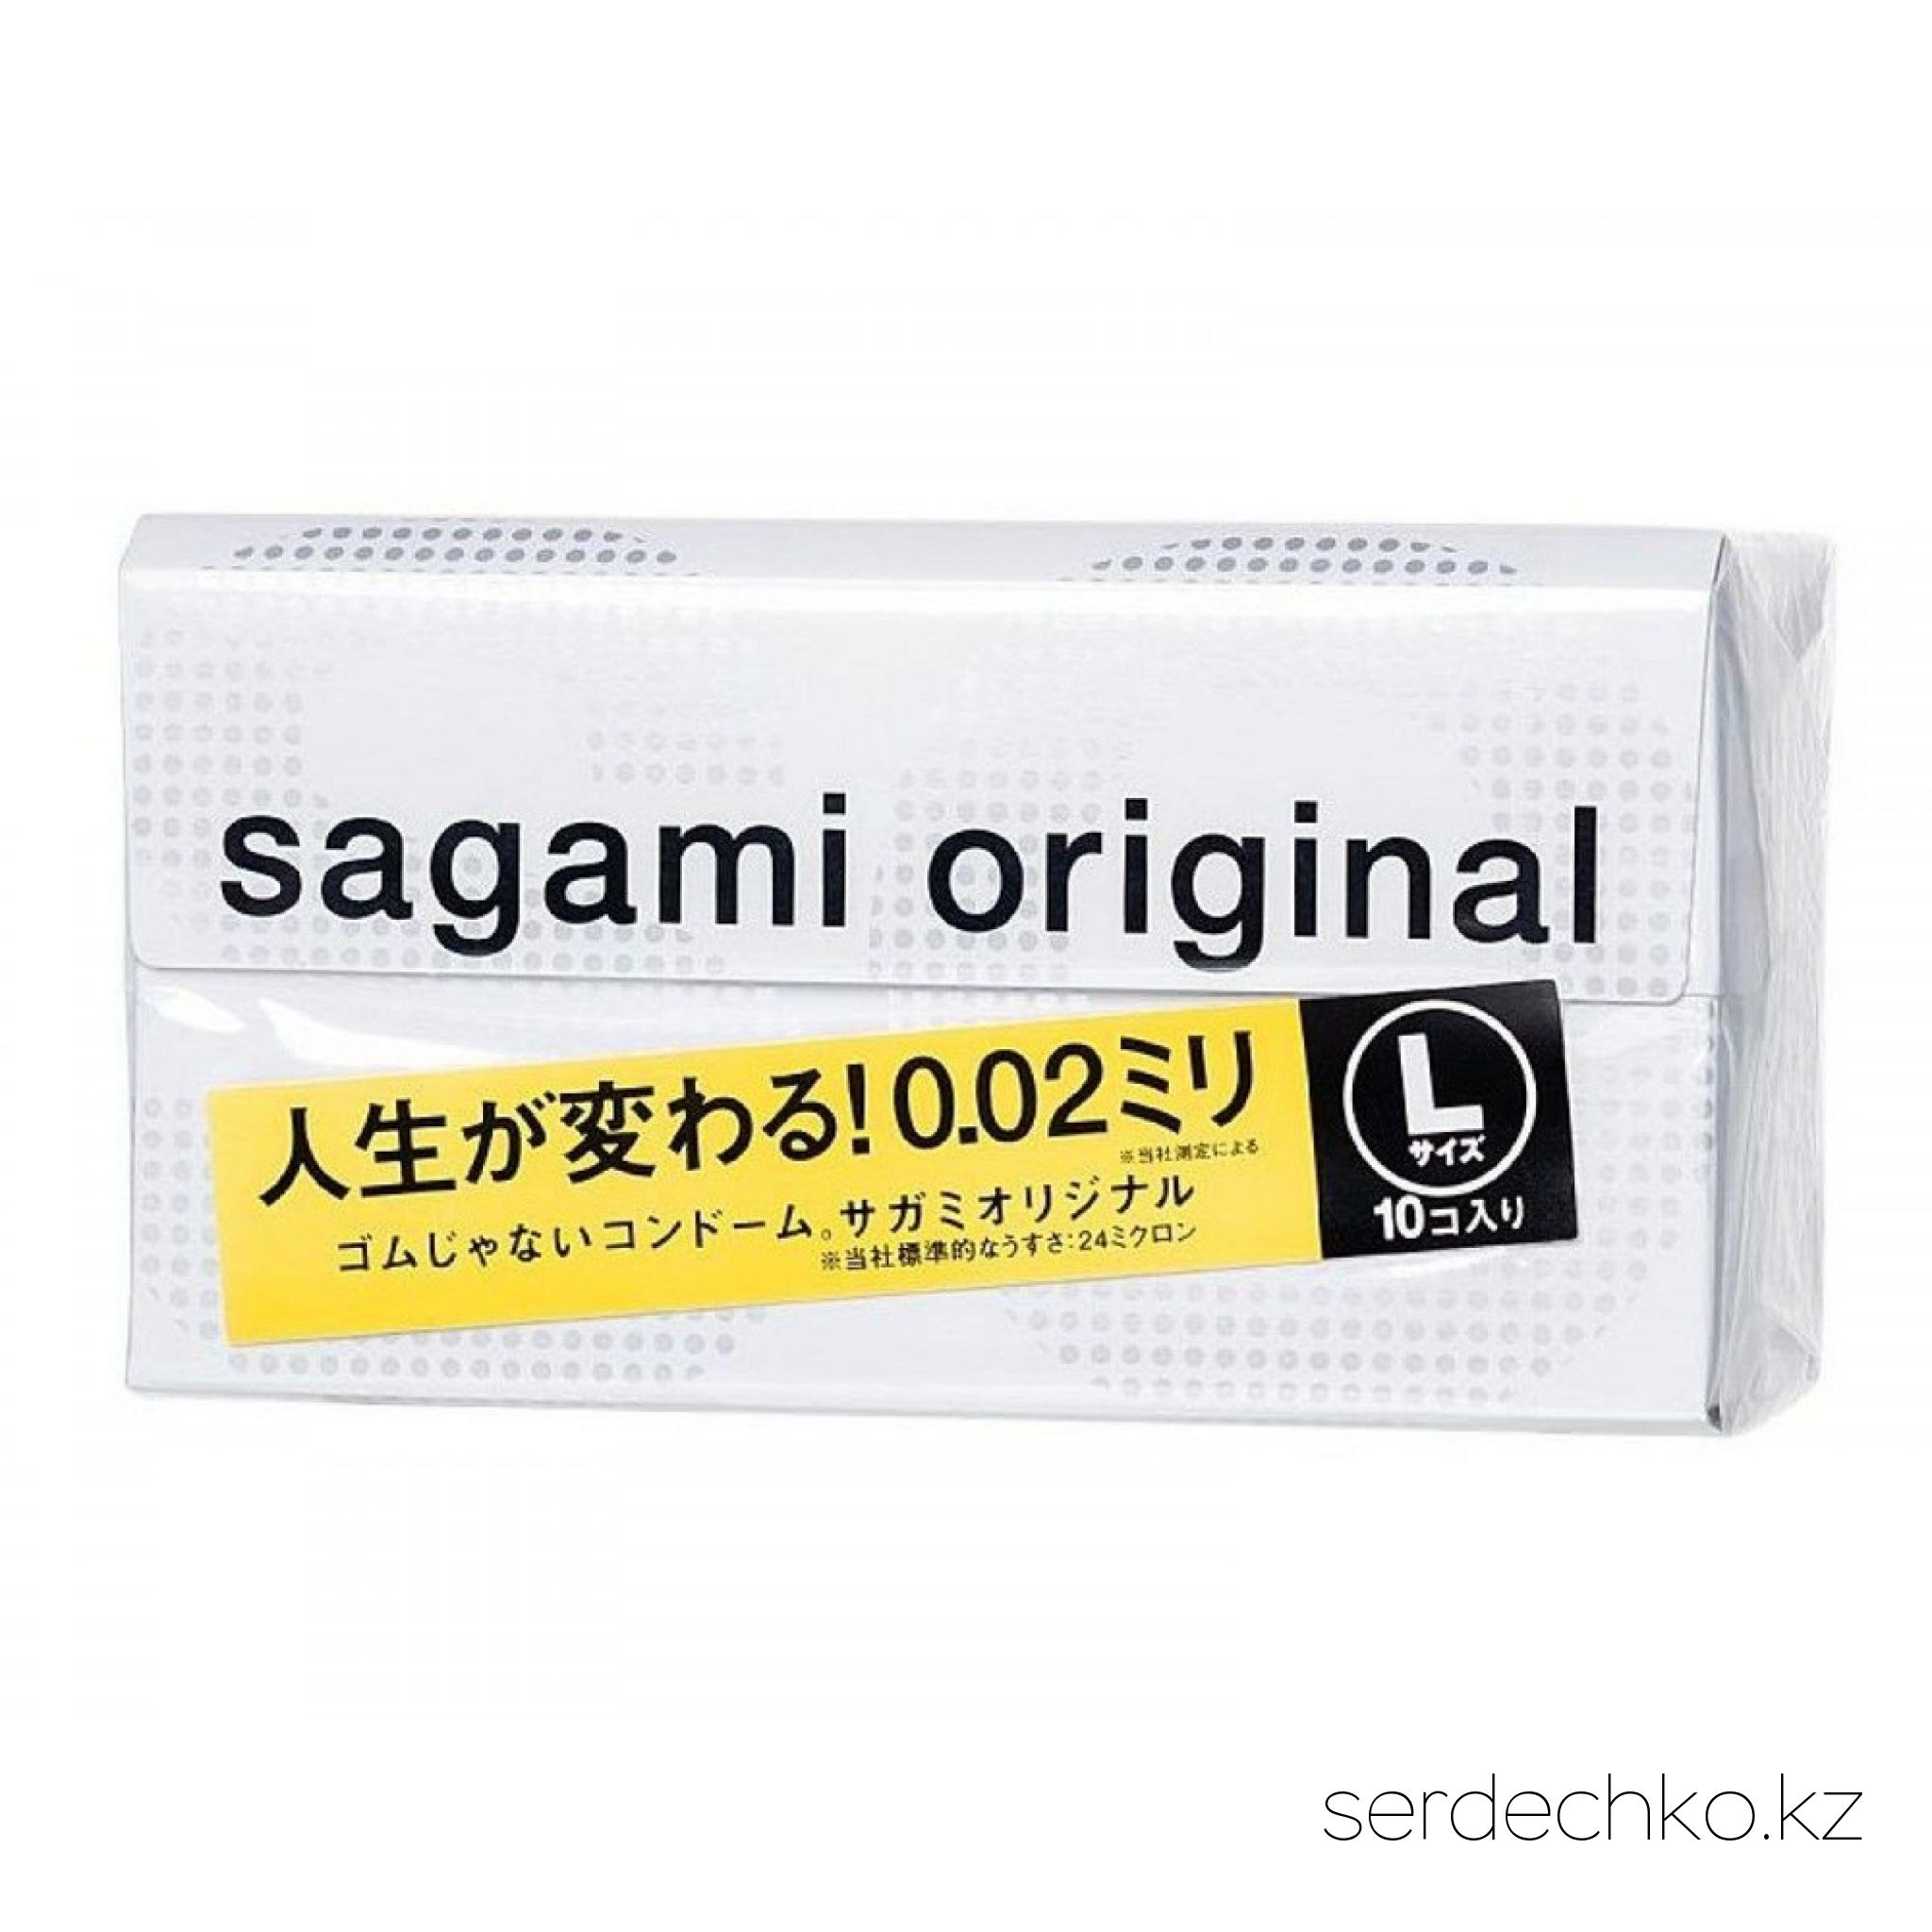 Презервативы Sagami Original 0.02 L-size увеличенного размера , 
	Эти ультратонкие презервативы с толщиной стенки 0,02 мм созданы специально для мужчин с выдающимися достоинствами. Благодаря увеличенному диаметру и длине в них вы всегда будете чувствовать себя комфортно. 
	
	Не нужно беспокоиться о соскальзывании, ЗППП, нежелательной беременности партнёрши… Sagami Original L-size - комфорт, защита и естественные ощущения для по-настоящему больших мальчиков. Толщина стенки - 0,02 мм.
	В упаковке - 10 шт.
	Вес в упаковке (кг): 0.01
	Вес товара, г: 10
	Возрастные ограничения: 18+
	Длина (мм): 19
	Единиц в одном товаре: 1
	Количество в упаковке, шт: 10
	Коллекция: Sagami Original
	Название материала: полиуретан
	
	Основные функции: дополнительный аксессуар
	Пол: для него
	Страна бренда: Япония
	Страна производства: Япония
	Толщина стенки презерватива, мм: 0.02
